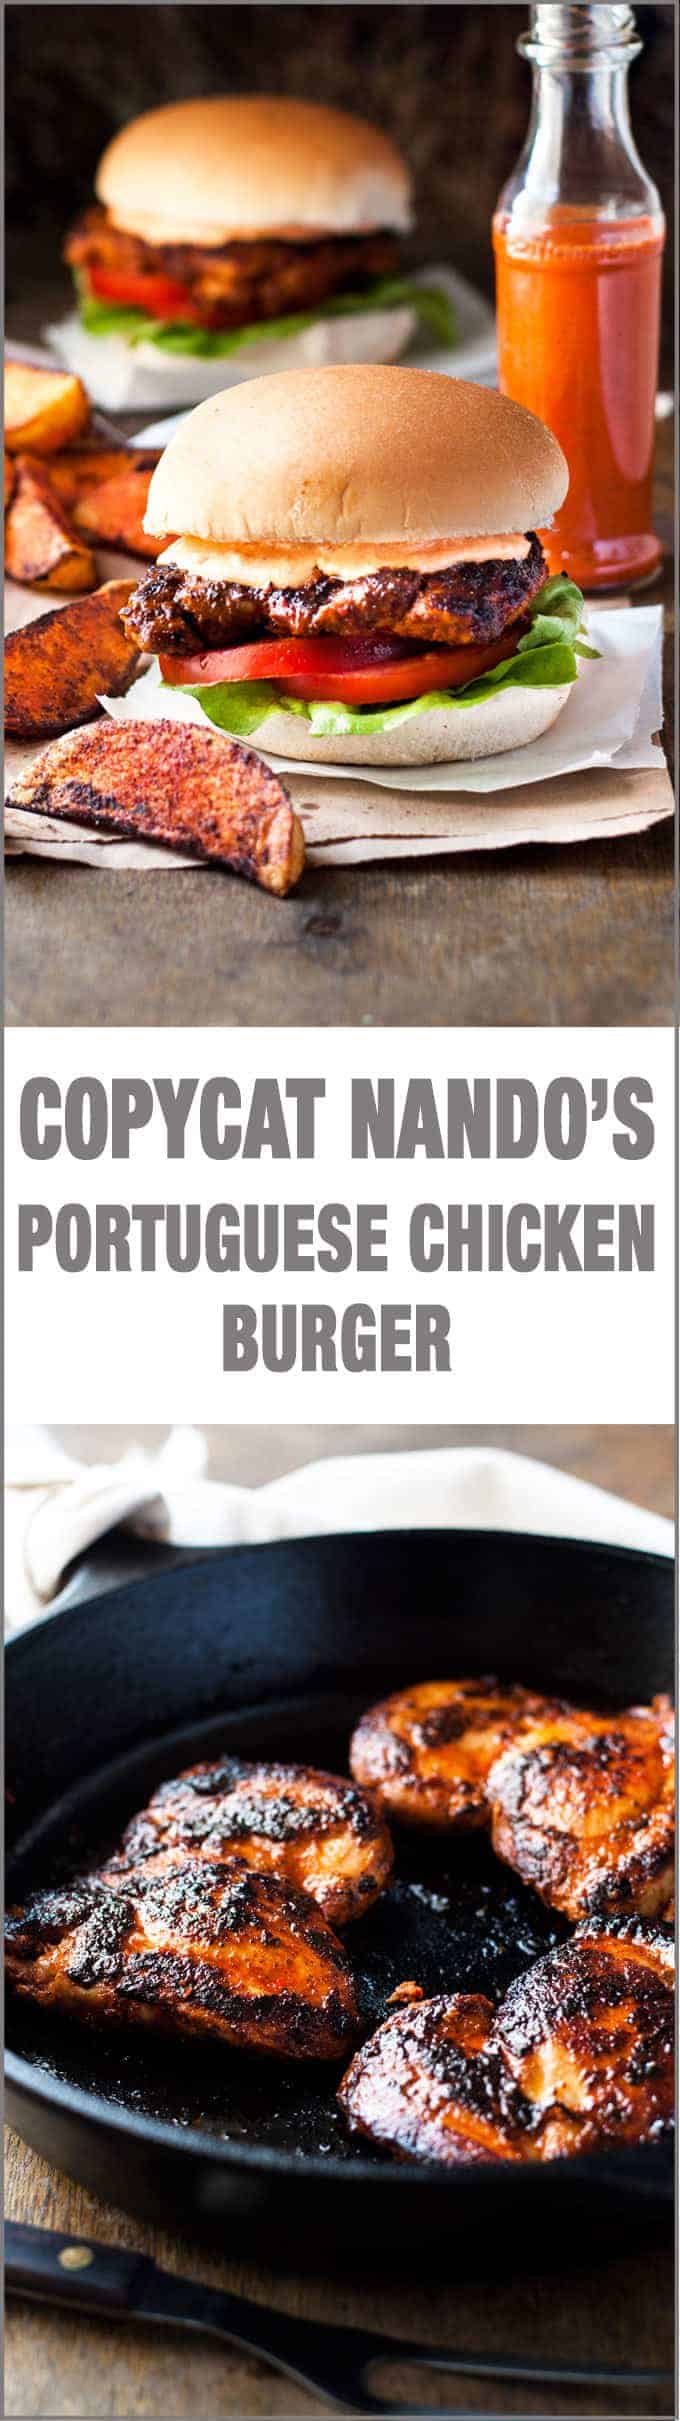 Portuguese Chicken Burger (Nando's Copycat) - my copycat of the famous Nando's Portuguese Chicken Burgers with Peri Peri Sauce